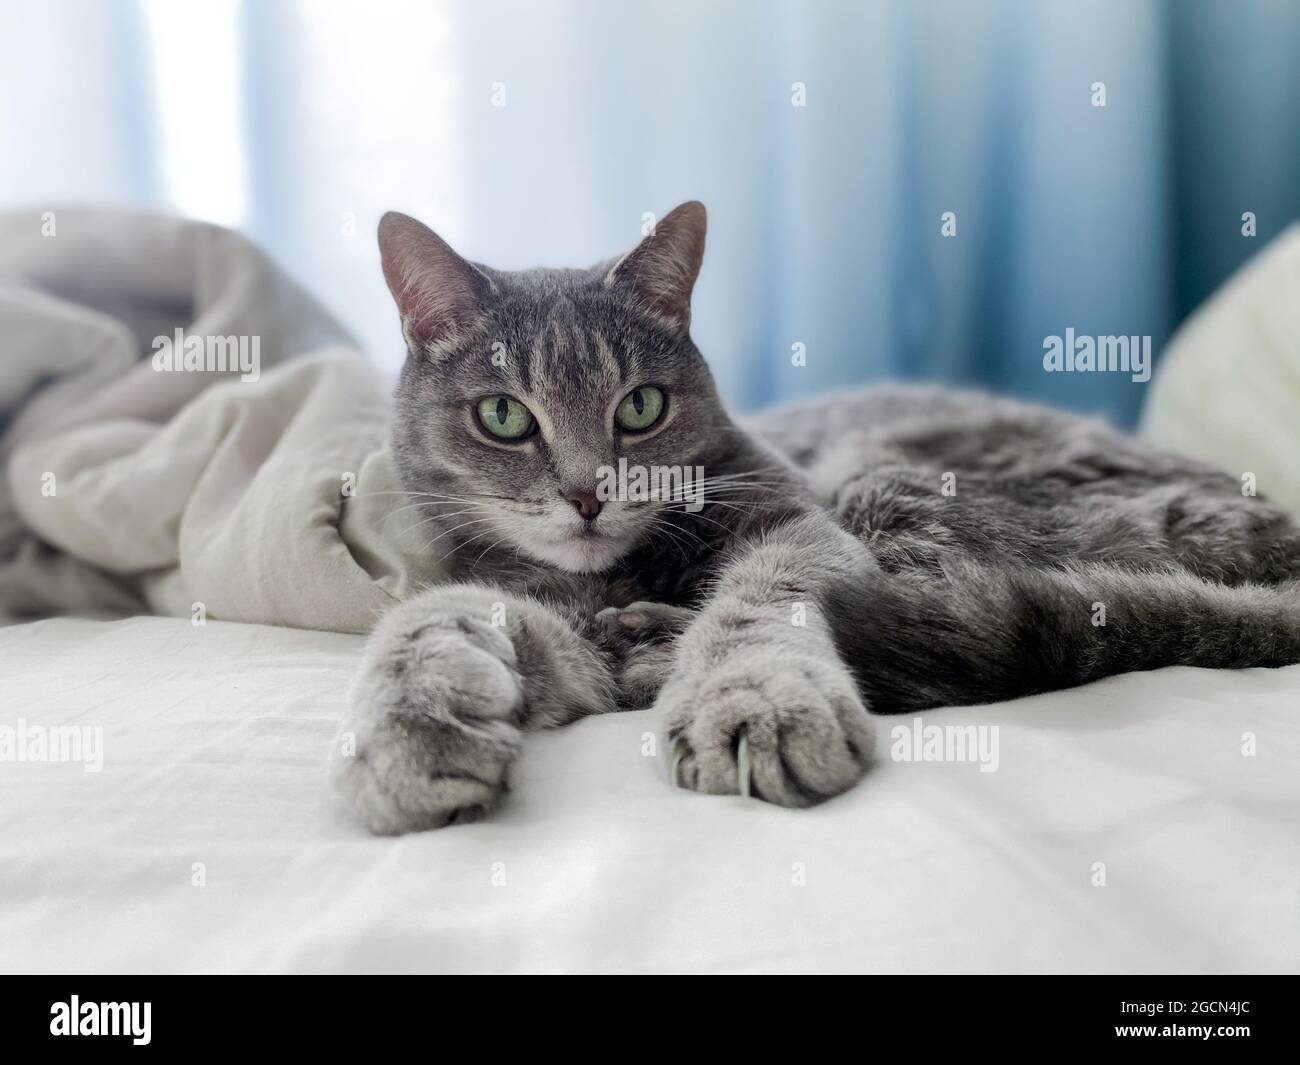 Un bel gatto grigio è sdraiato sul letto dei proprietari, comodamente sistemato, con le zampe allungate. Foto Stock